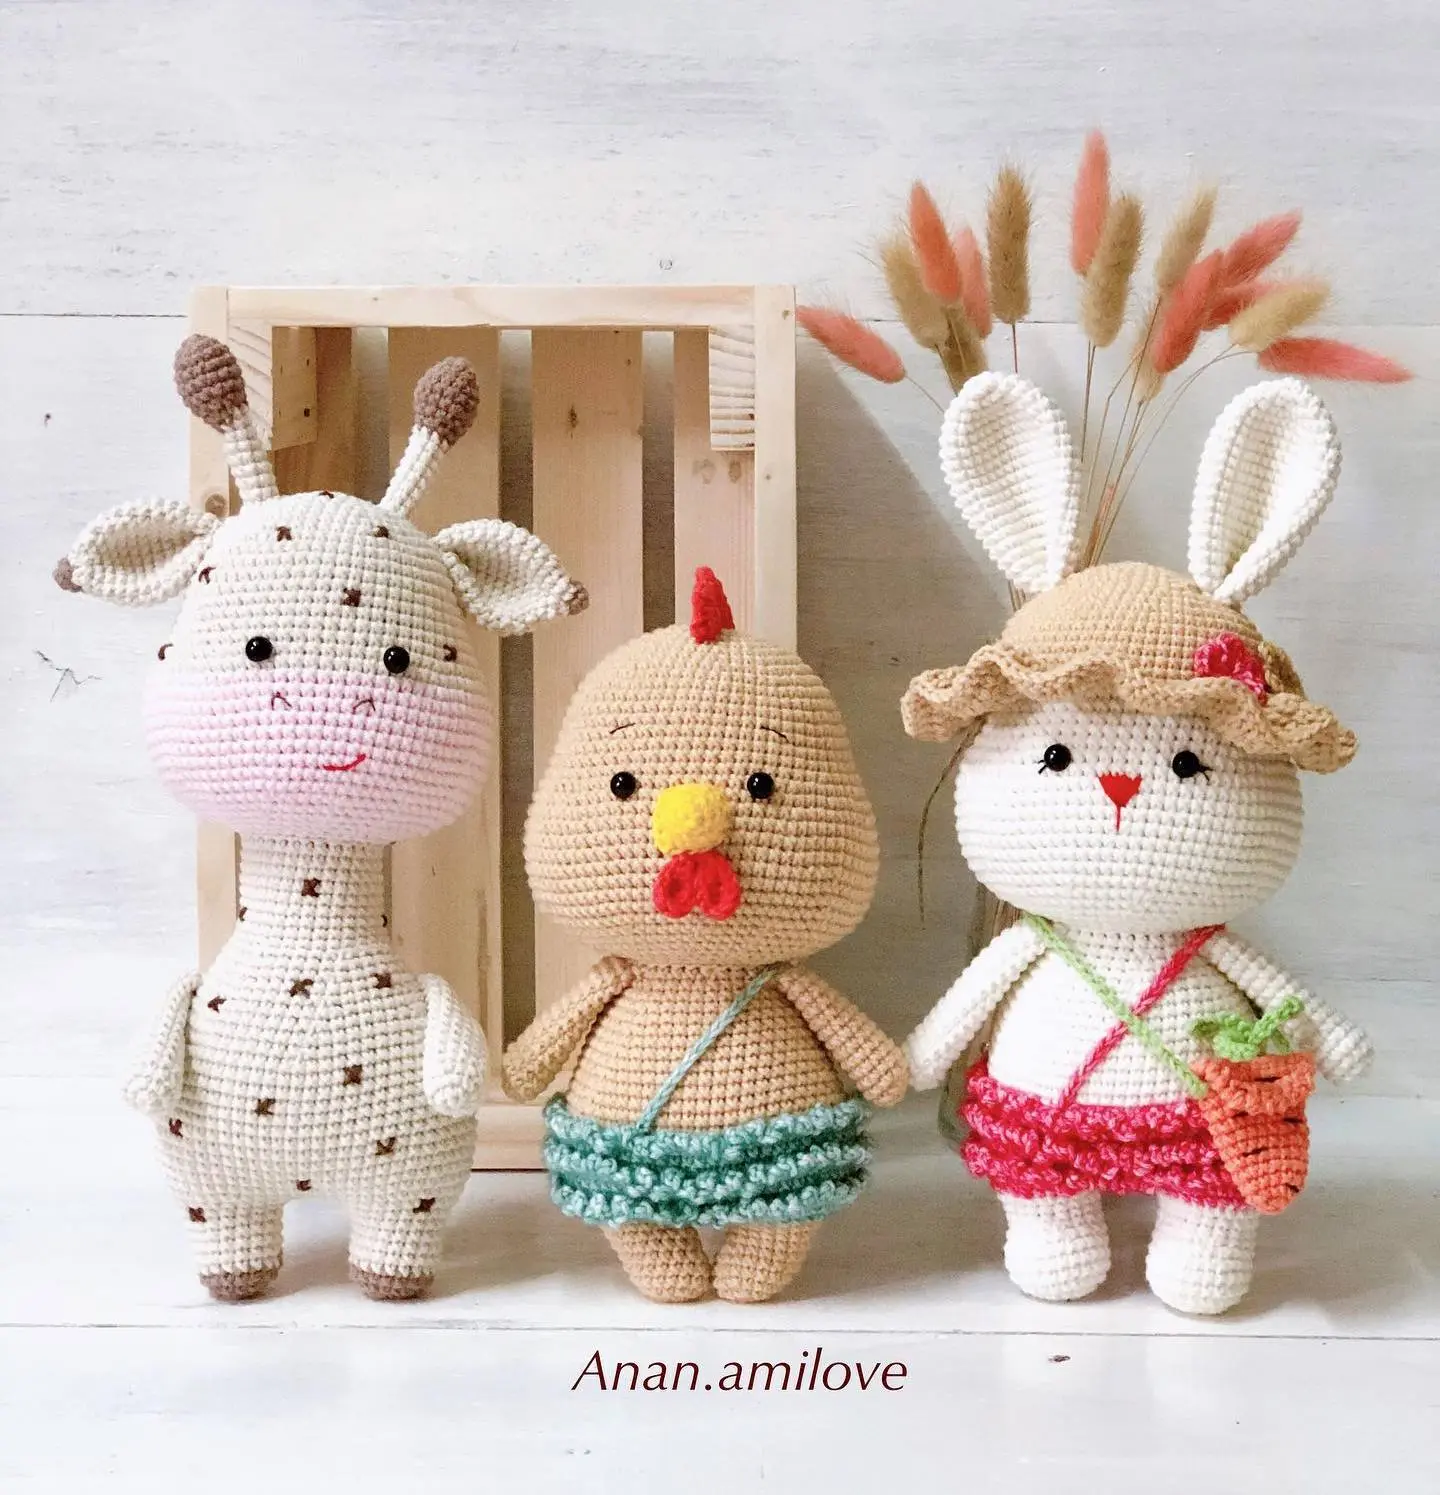 Amigurumi toys by Anan.amilove